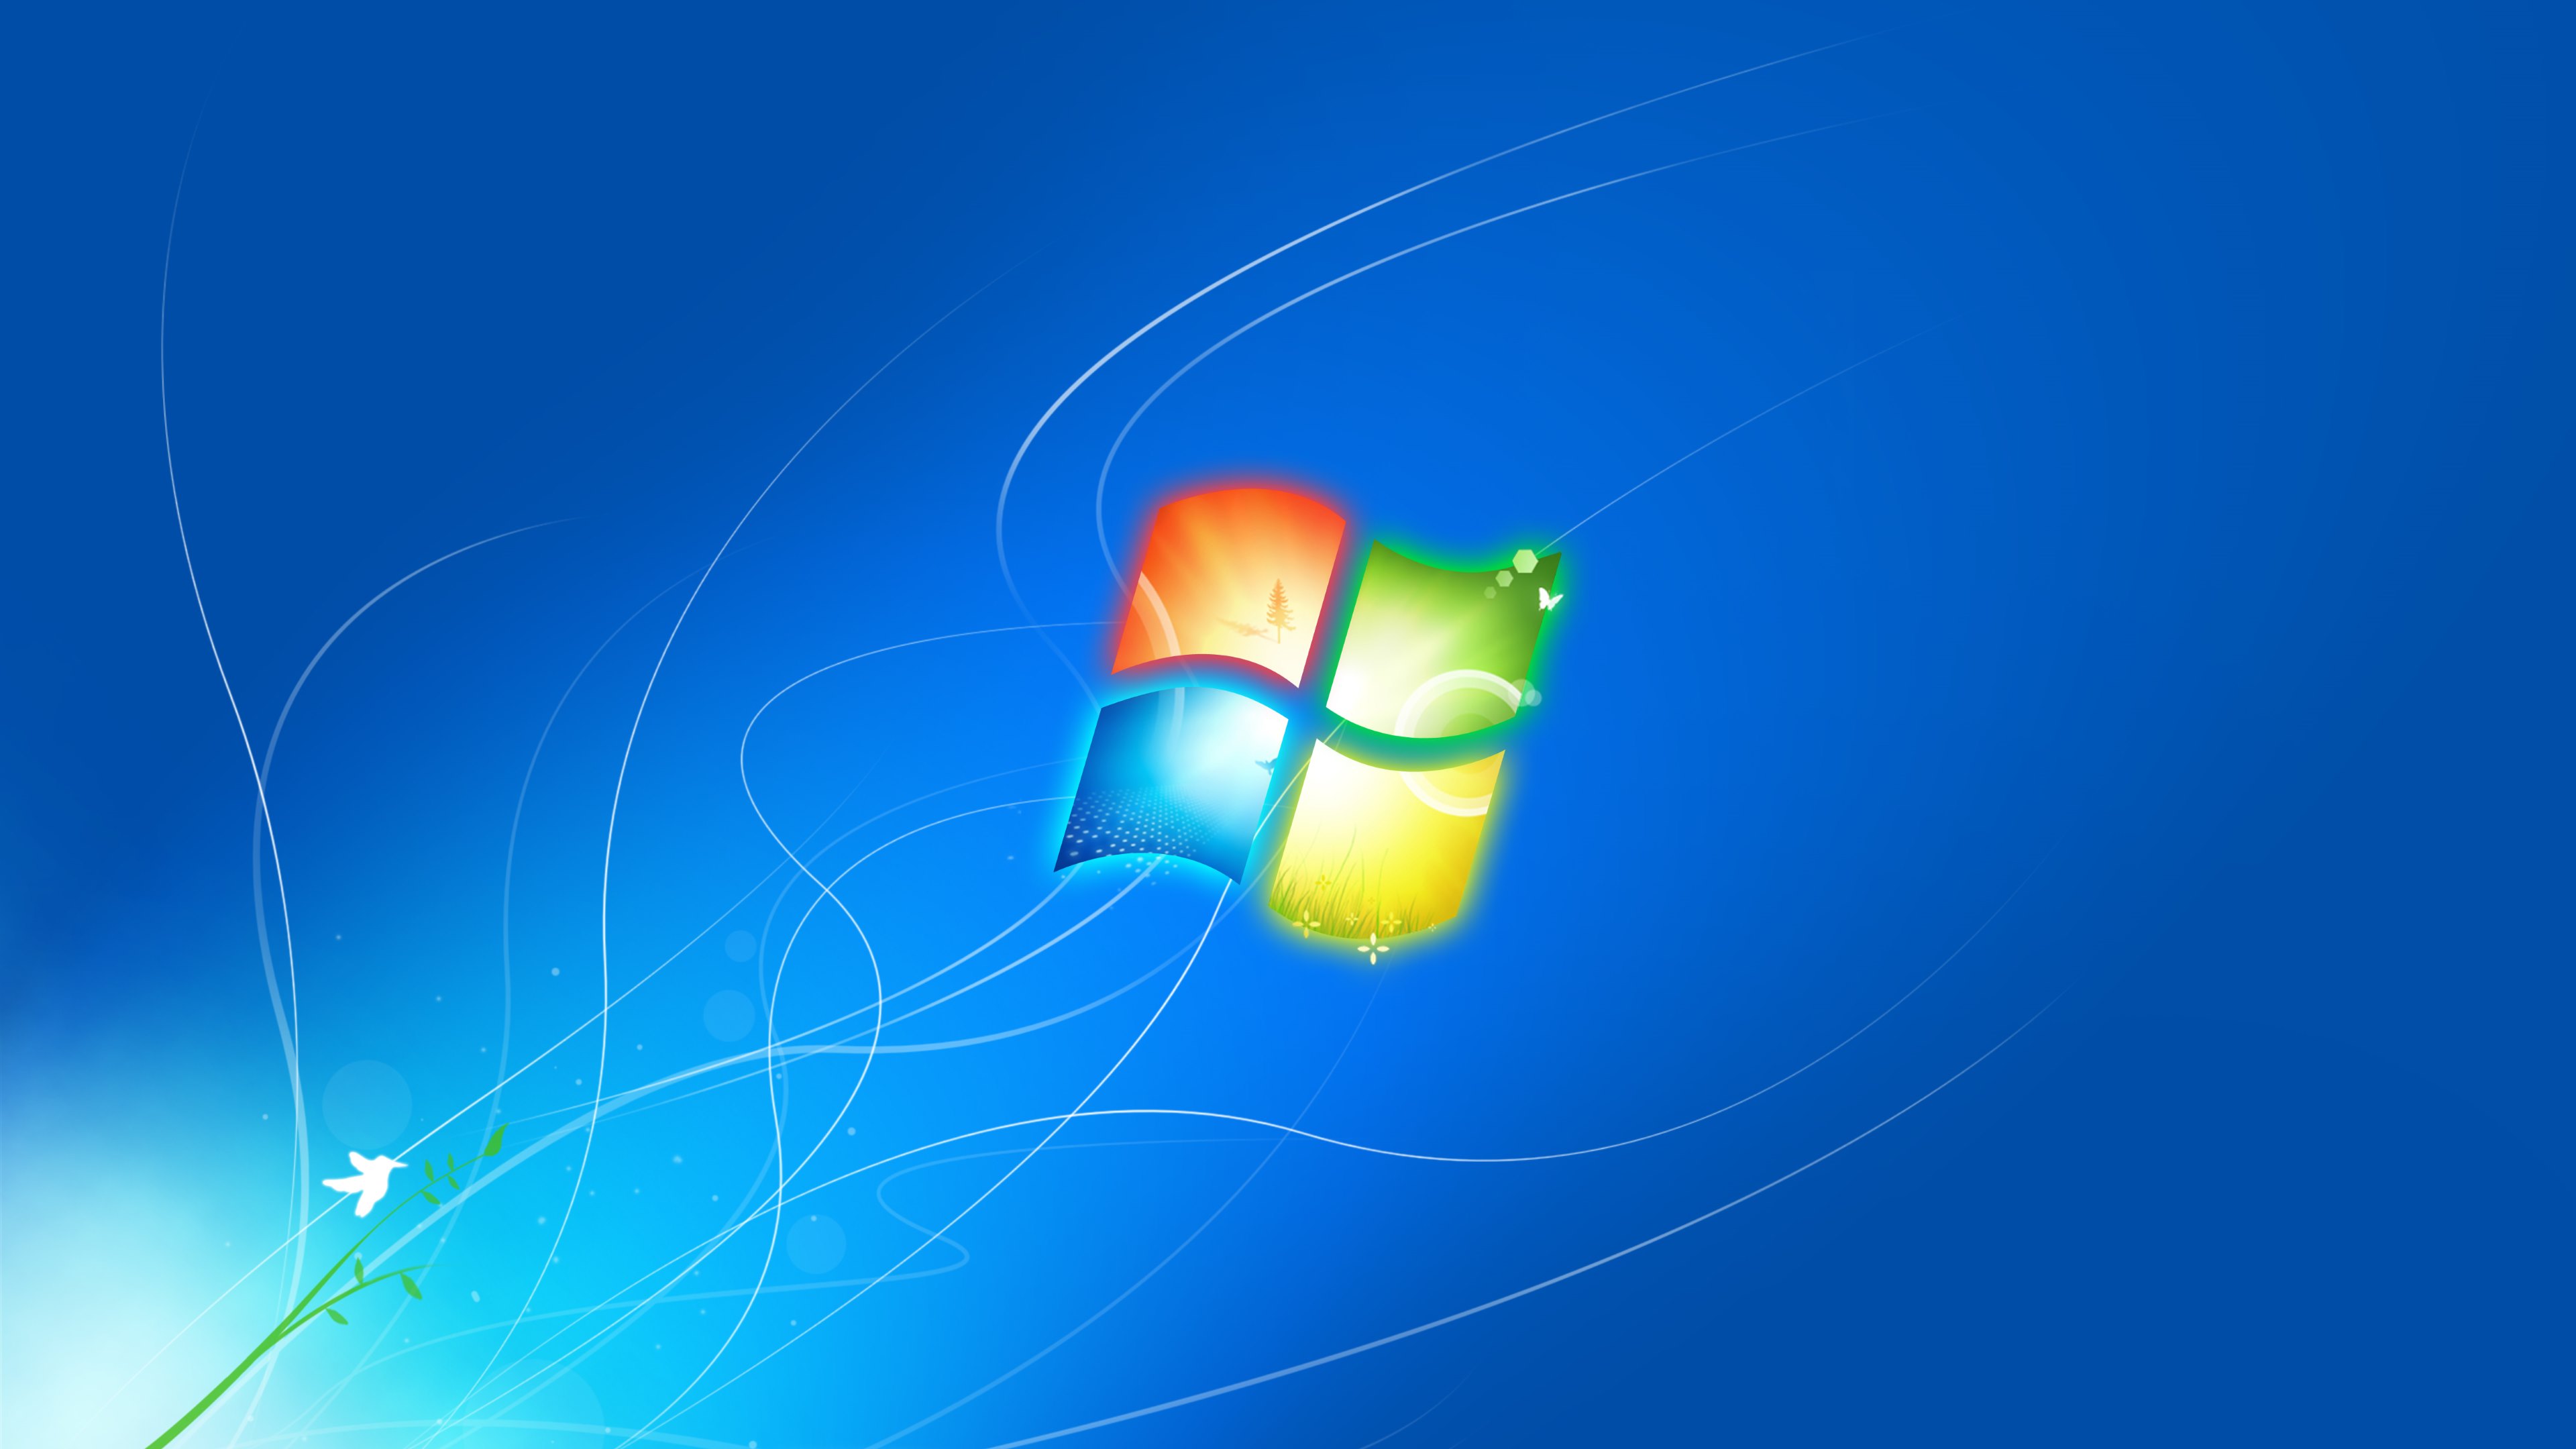 Hình nền Windows 7 Glass Logo miễn phí không chỉ tạo cho màn hình máy tính của bạn một hiệu ứng mịn màng thú vị, mà còn giúp nâng cao trải nghiệm của bạn khi sử dụng máy tính. Hình nền này được thiết kế đặc biệt để cải thiện sự hiển thị của logo Windows